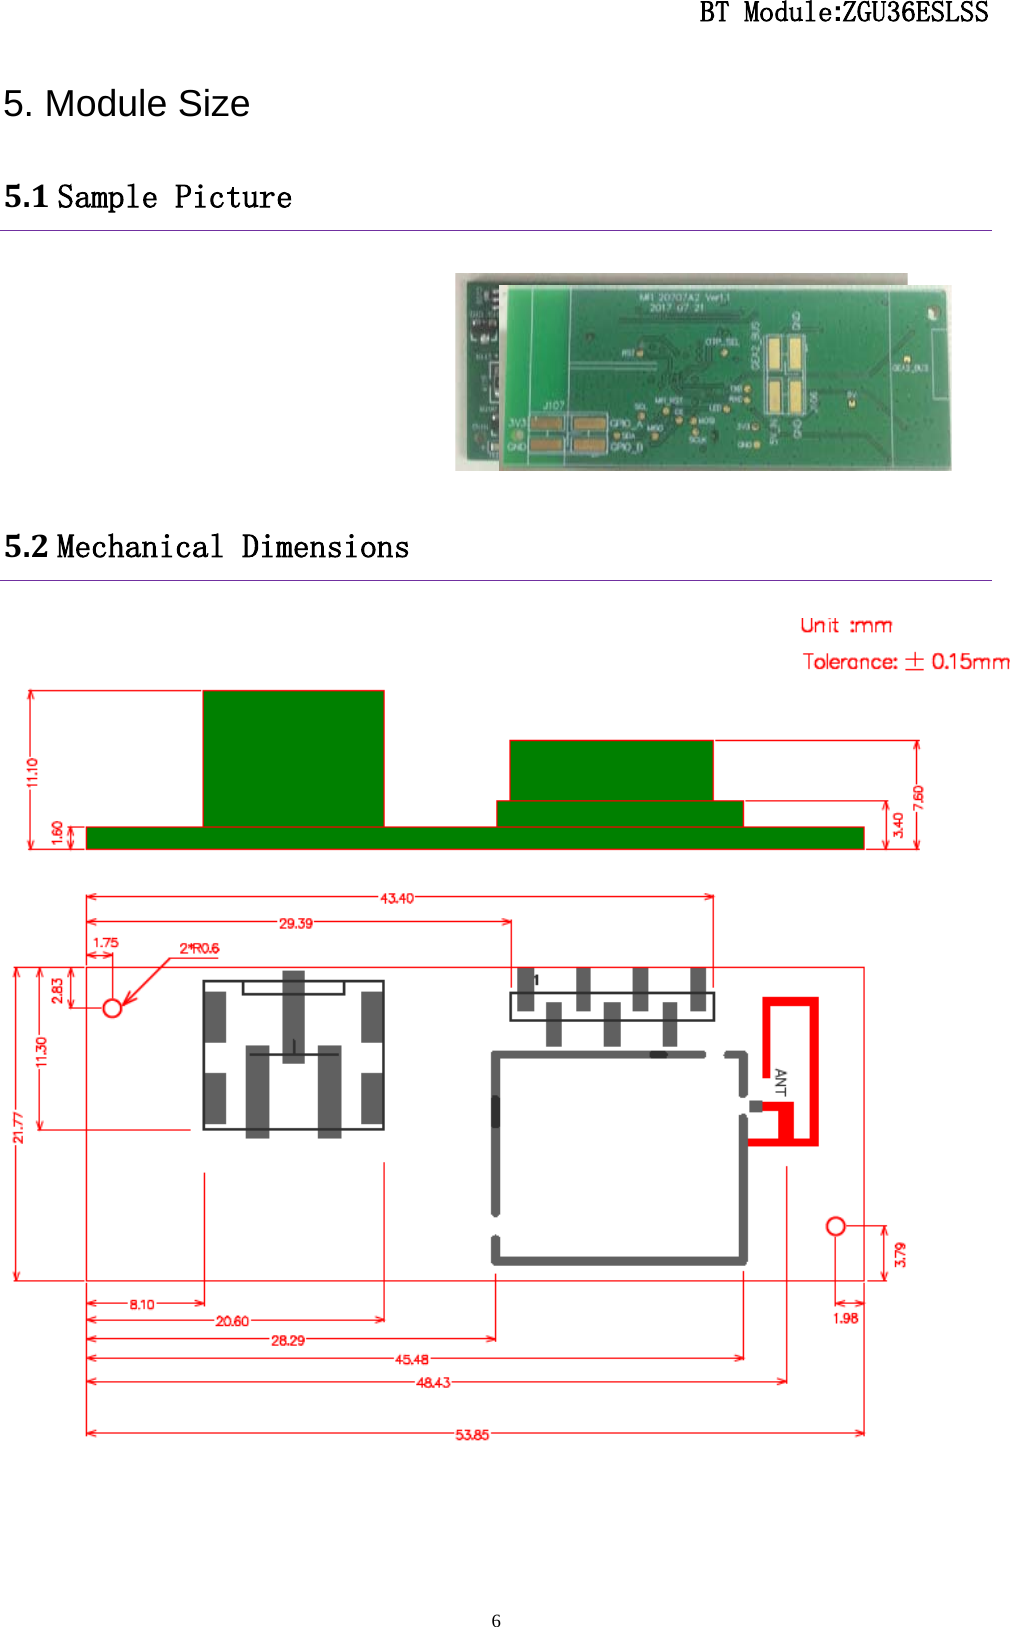                                                  BT Module:ZGU36ESLSS                                                                                                                                                                                 6 5. Module Size 5.1 Sample Picture       5.2 Mechanical Dimensions     